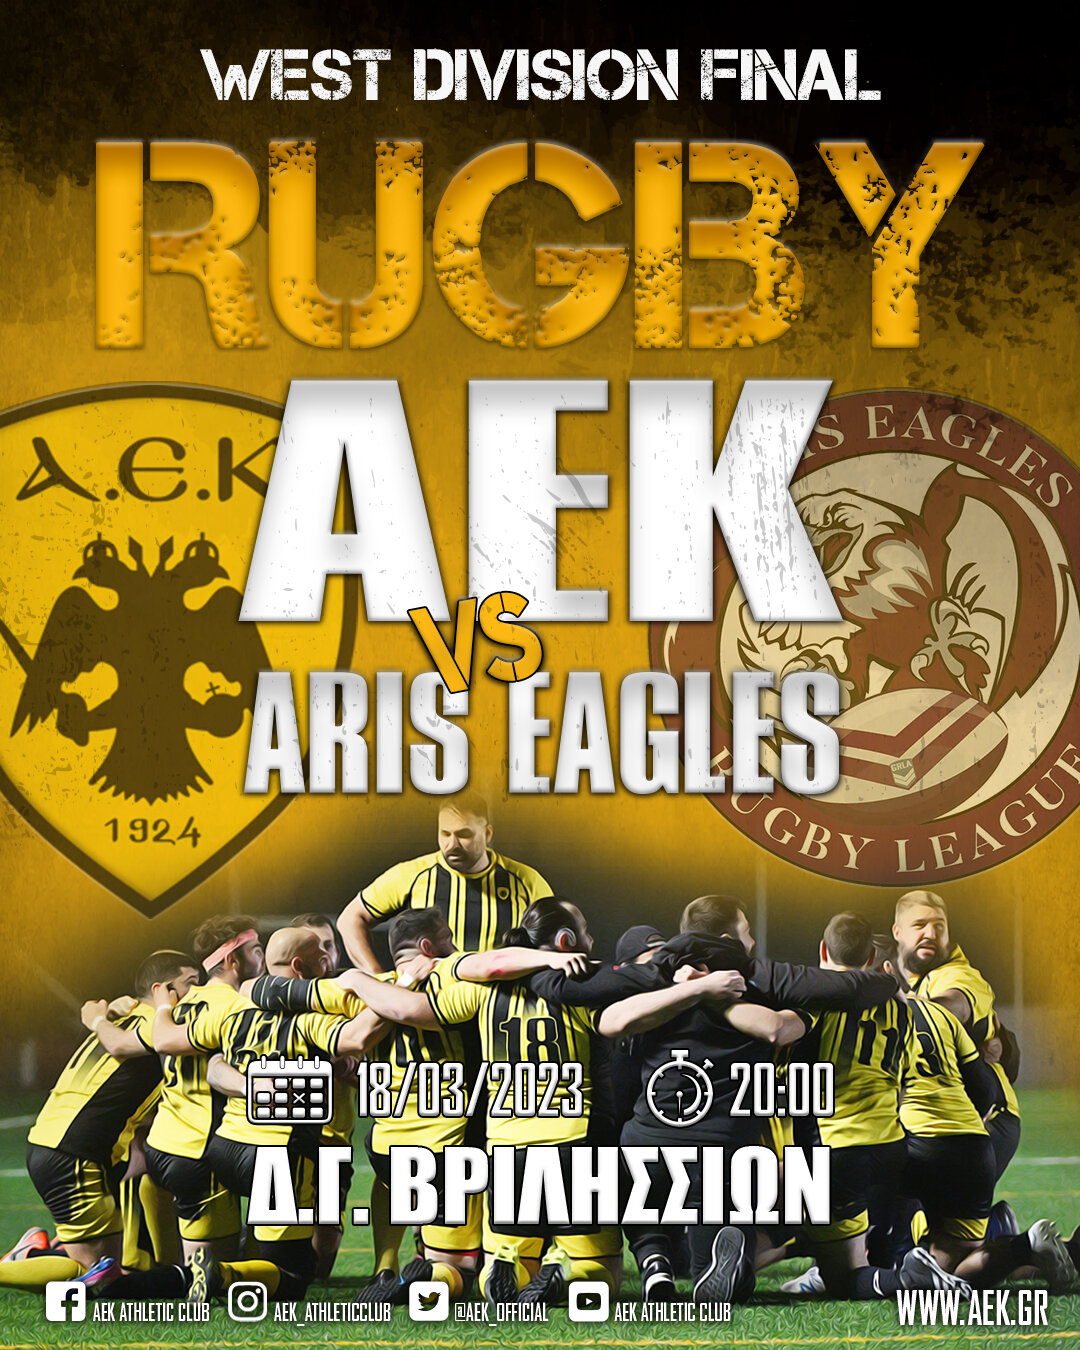 AEK VS aris eagles: Rugby, τελικός δυτικής περιφέρειας